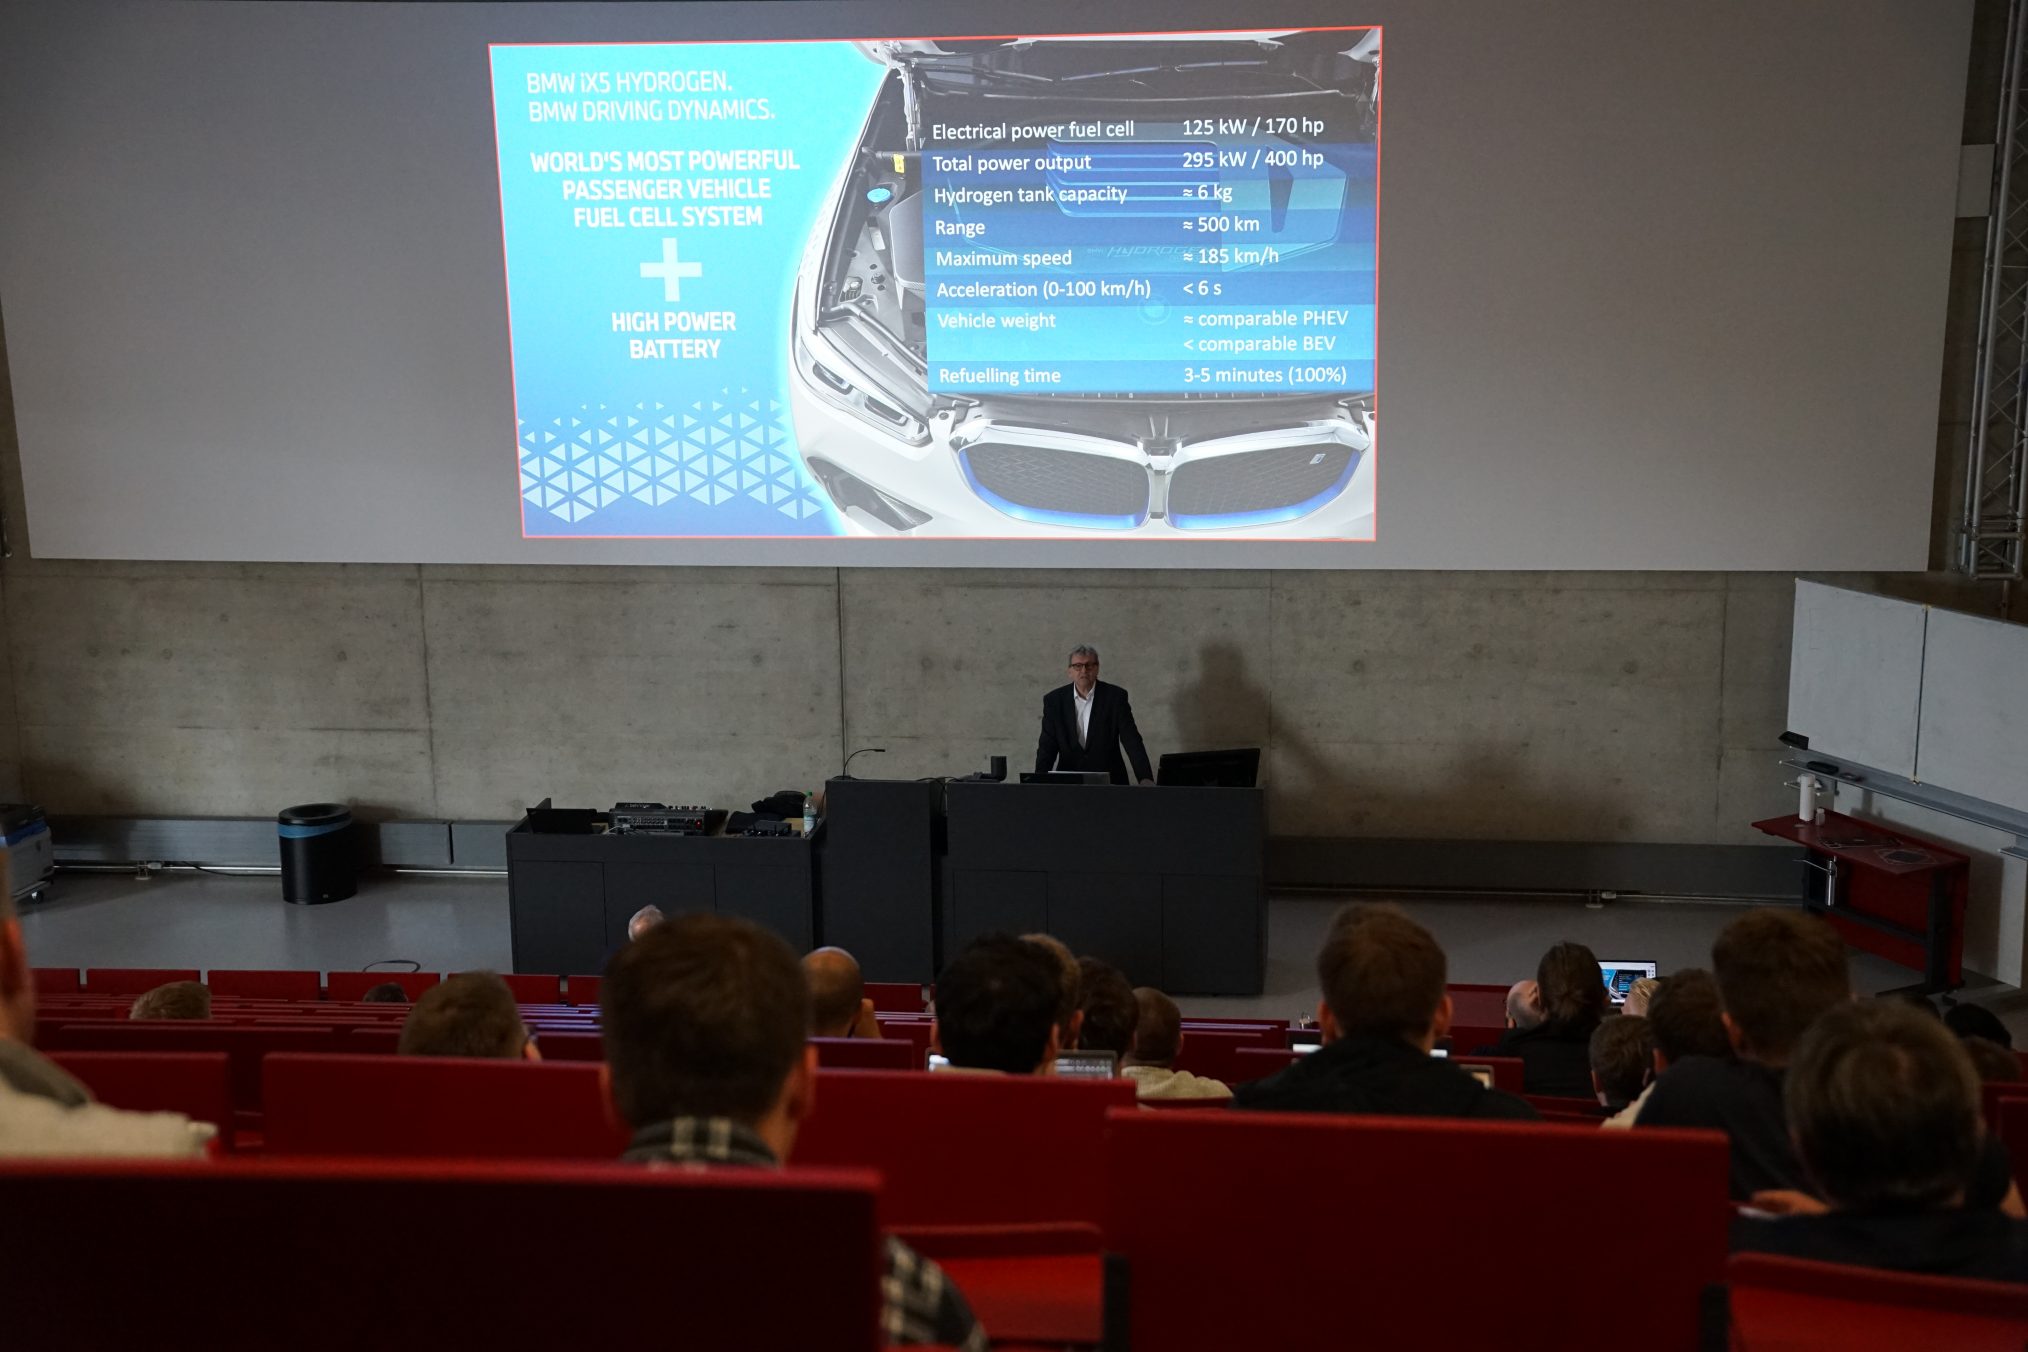 “Woche des Wasserstoff”: Presentation on the BMW fuel cell propulsion system, Aachen